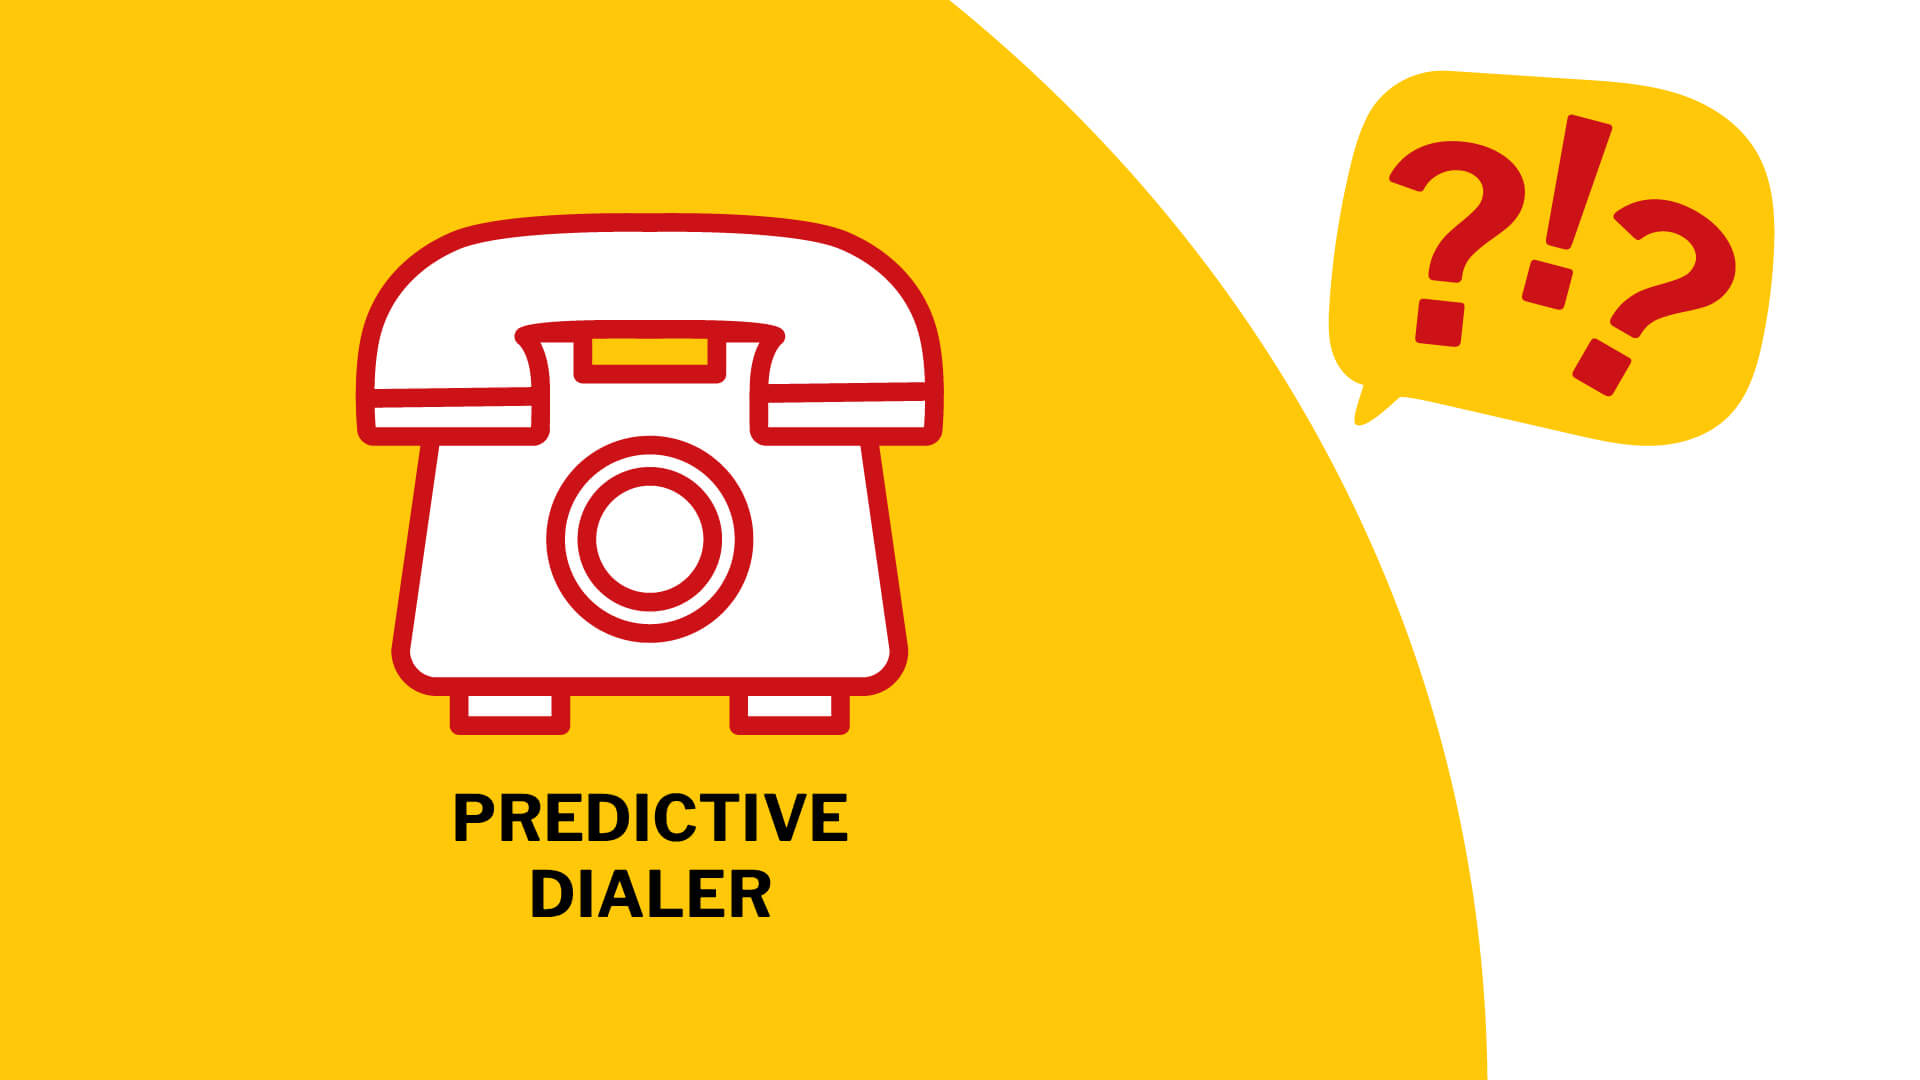 'Predictive Dialer' steht unter der Grafik eines Wählscheiben-Telefons, während rechts daneben eine Sprachblase mit zwei Ausrufezeichen und einem Fragezeichen abgebildet ist.